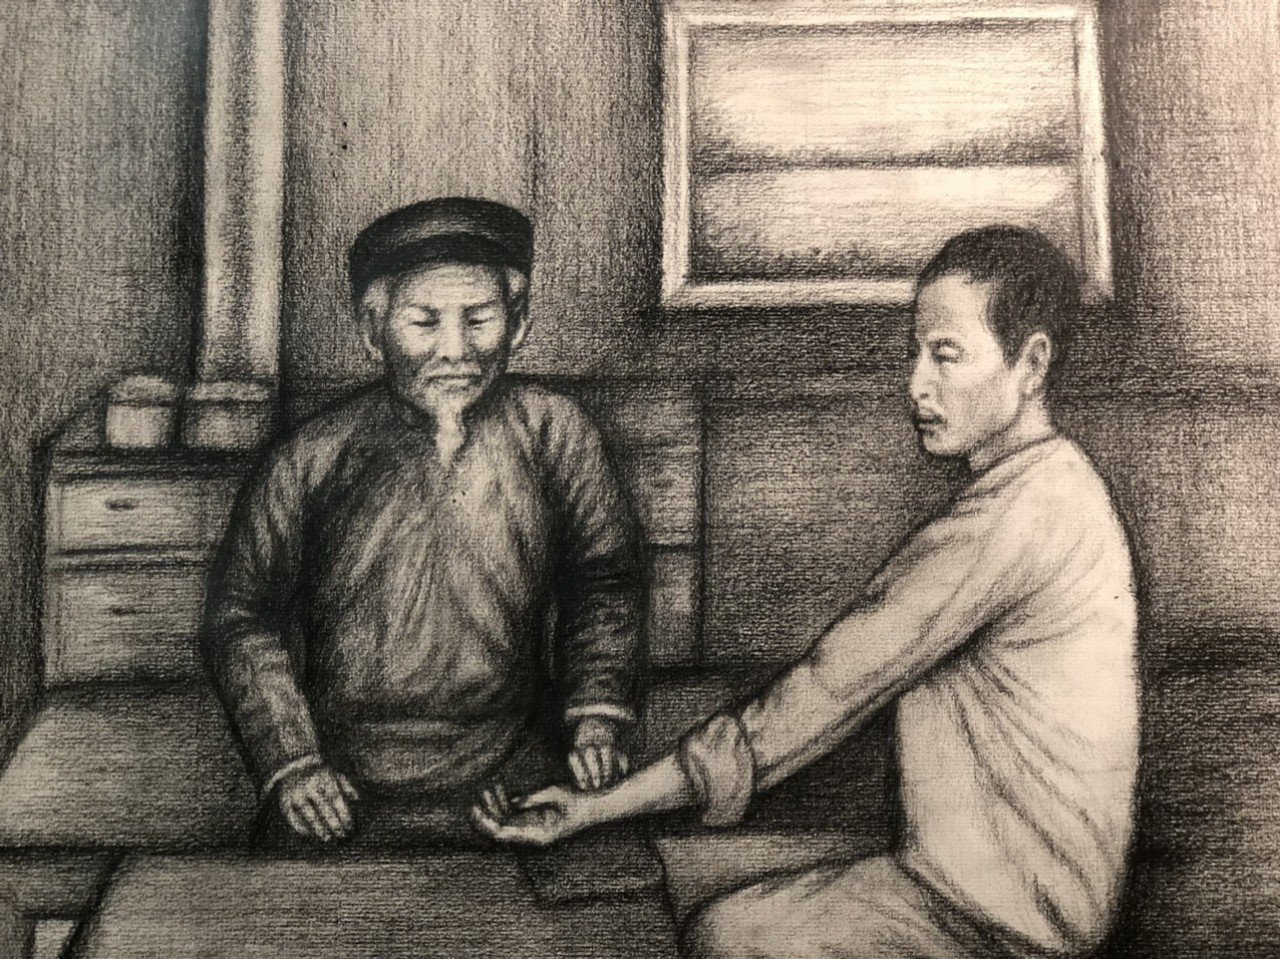 Tranh minh họa Nguyễn Đình Chiểu bắt mạch của Kỷ lục gia thế giới, họa sĩ Đoàn Việt Tiến vẽ năm 2022.